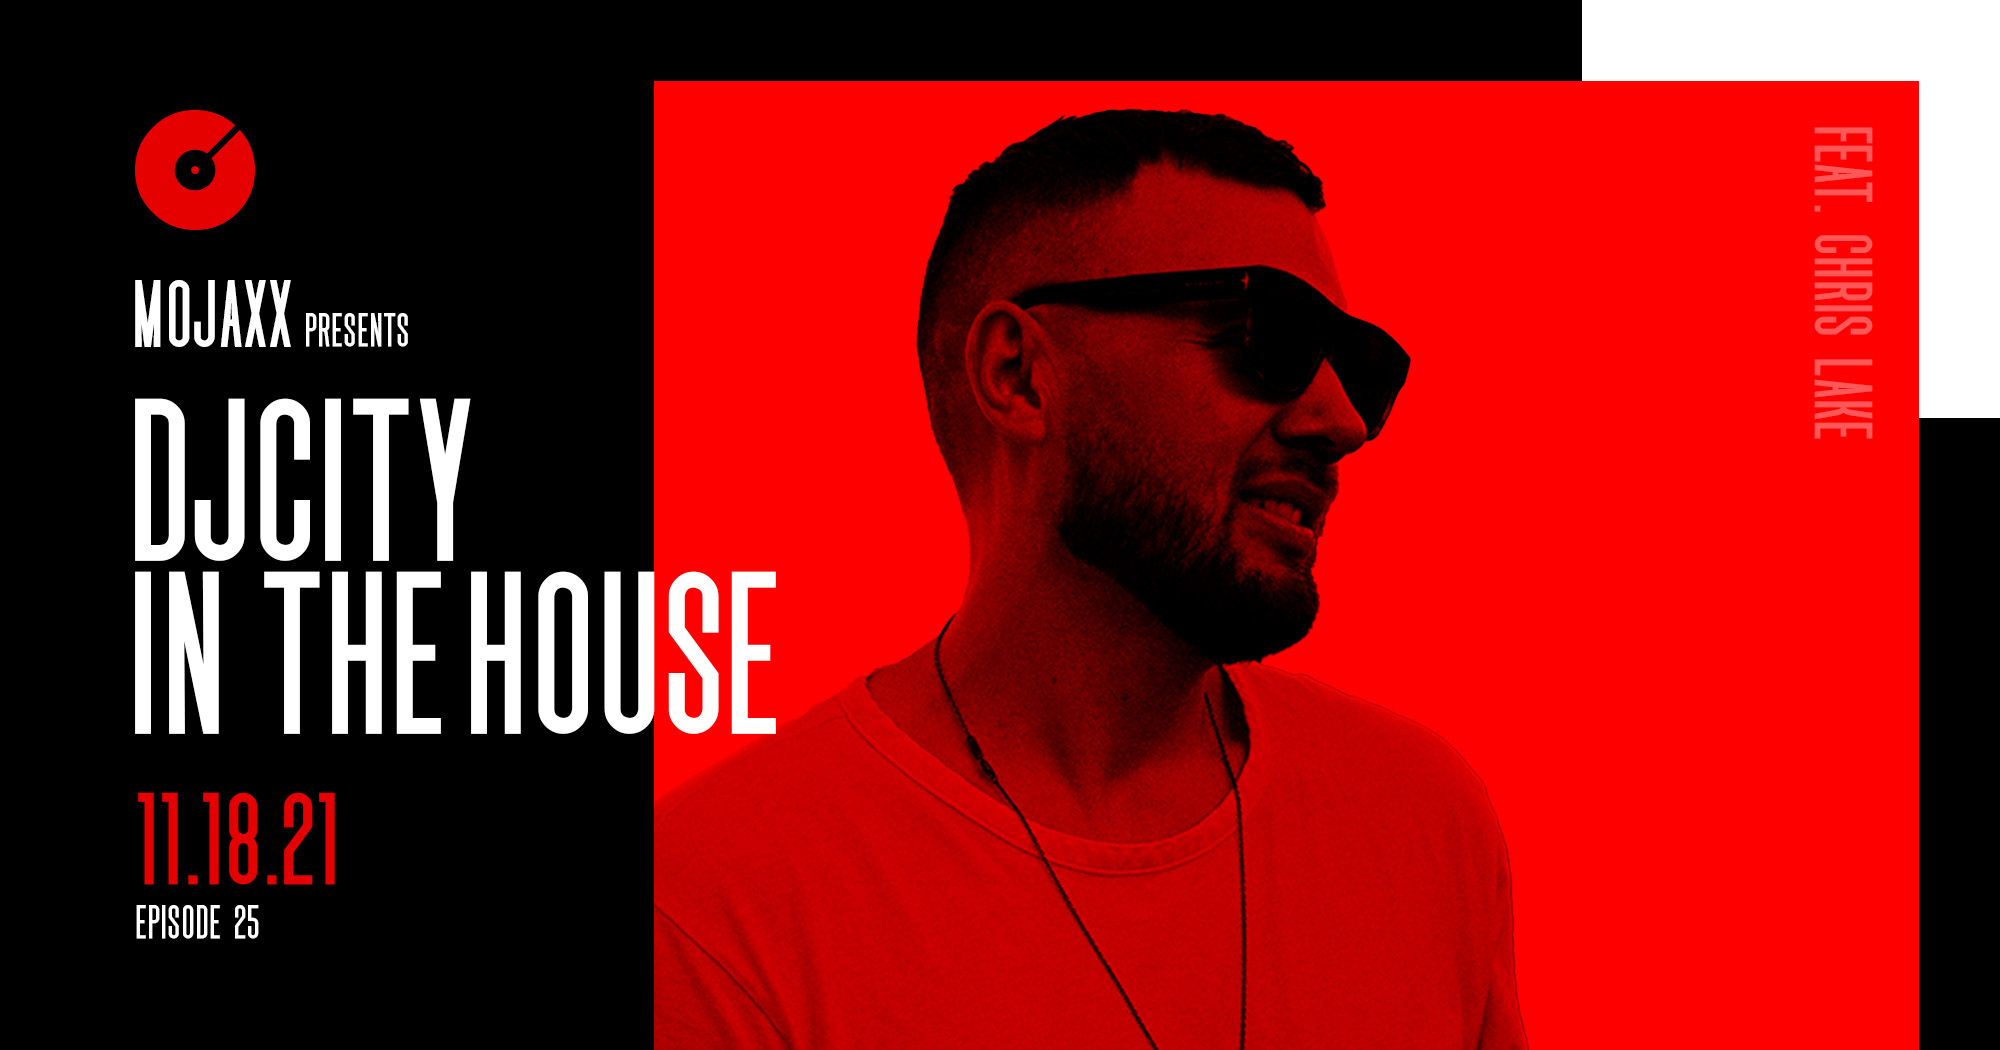 Listen to ‘DJcity in the House’ Feat. Mojaxx: November 18